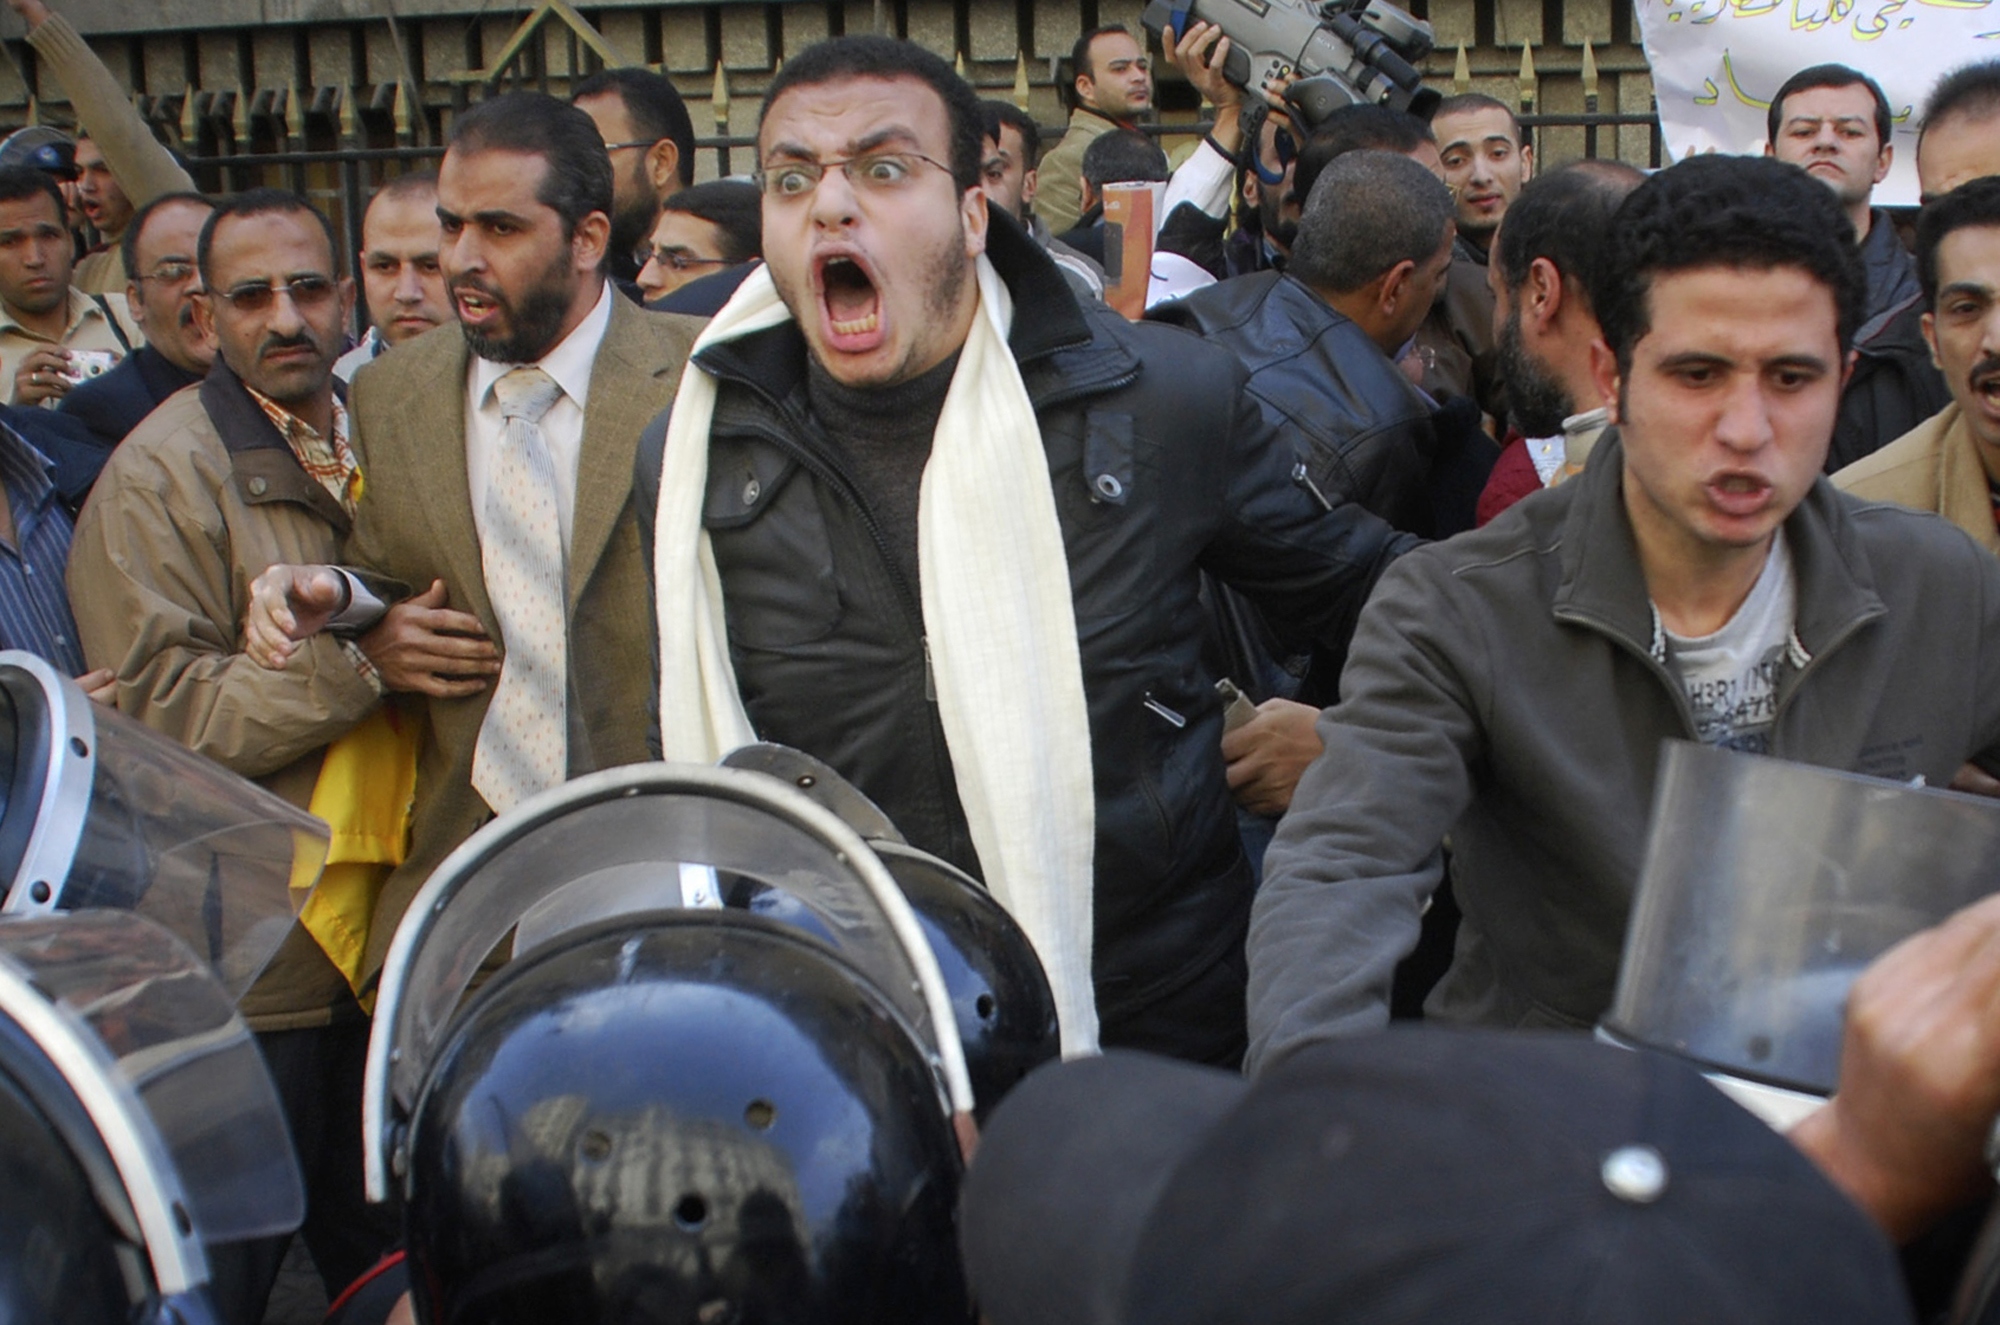 Demonstranter stoppas av polis i Kairo, Egypten. Hundratals regeringskritiker marscherade in i den egyptiska huvudstaden för att protestera mot President Hosni Mubarak. Foto: Mohammed Abu Zaid/SCANPIX